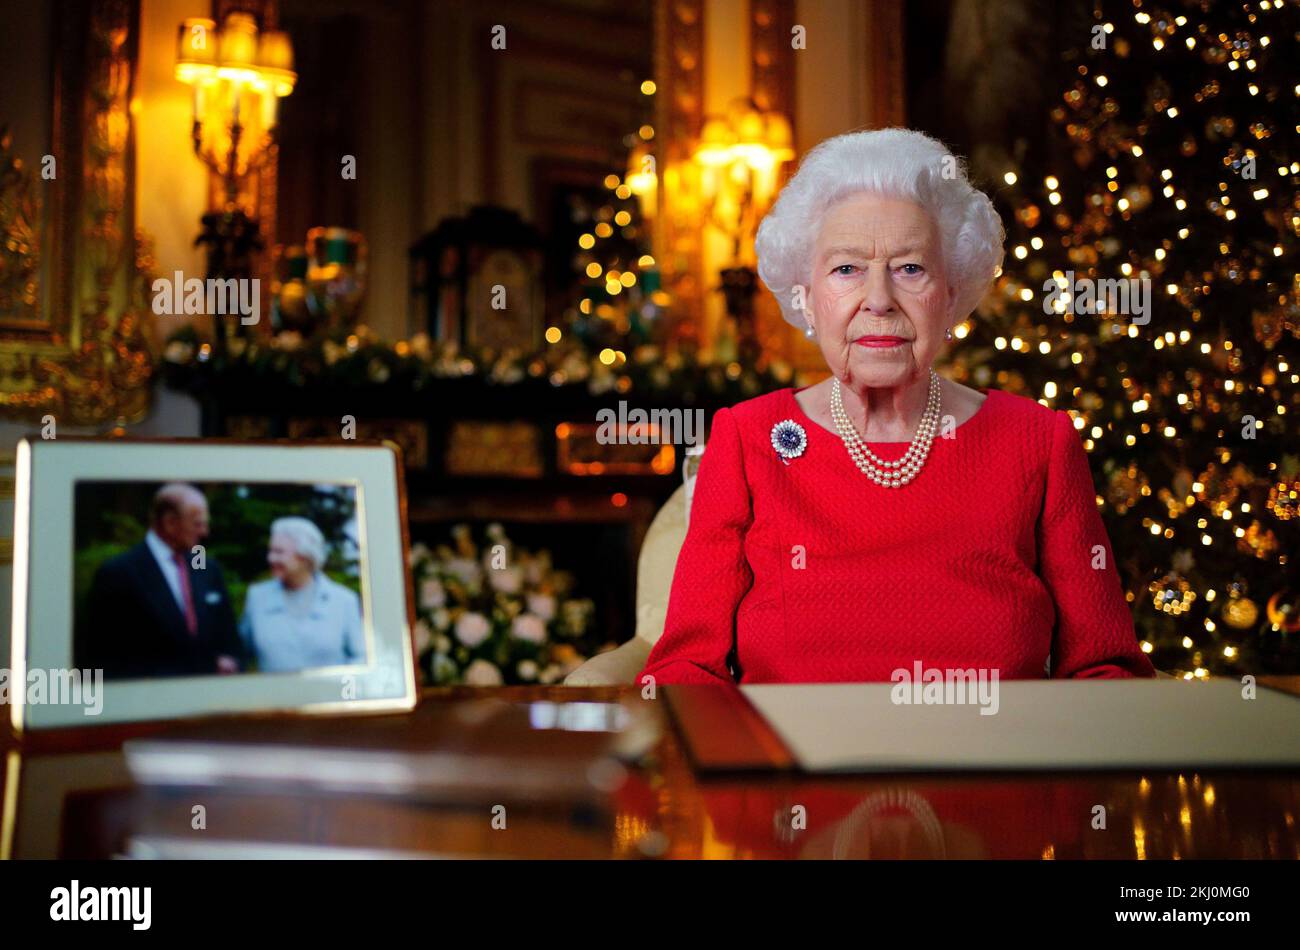 Dateifoto vom 23. Oktober 12/21 von Königin Elizabeth II., die ihre jährliche Weihnachtssendung aufnimmt, als König Karl III. Dieses Jahr den ersten Weihnachtsfeiertag in Sandringham verbringen wird, um eine Rückkehr zum traditionellen Weihnachtsfest der königlichen Familie auf dem Anwesen der Norfolk zu markieren. Stockfoto